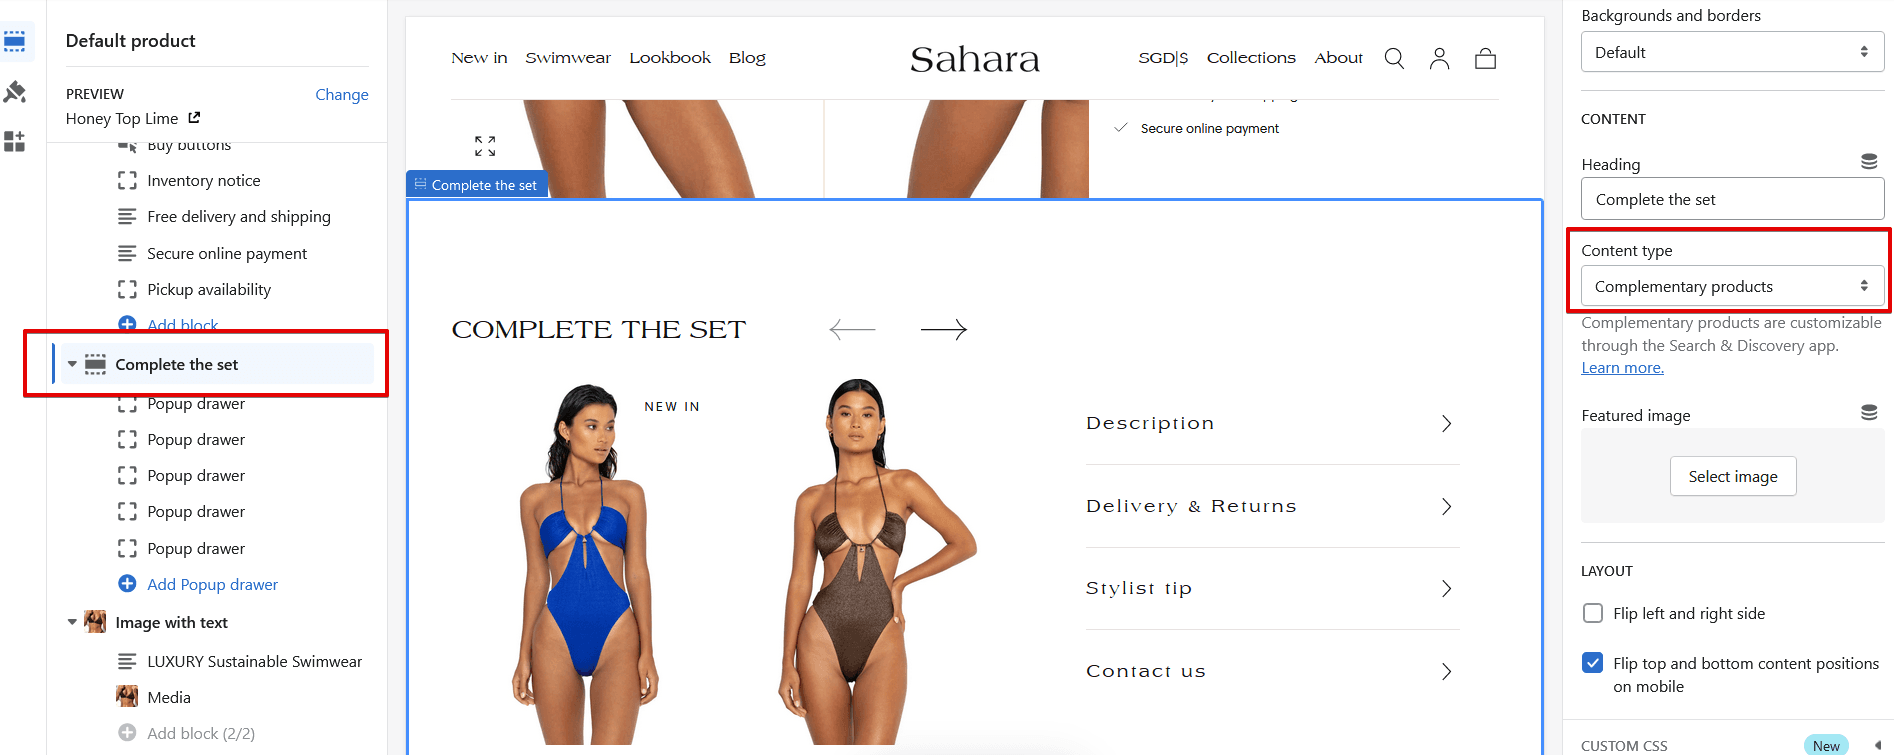 Sahara+B7+Customize+Sahara+Theme+1.0.2+-+010323.152 (1).png